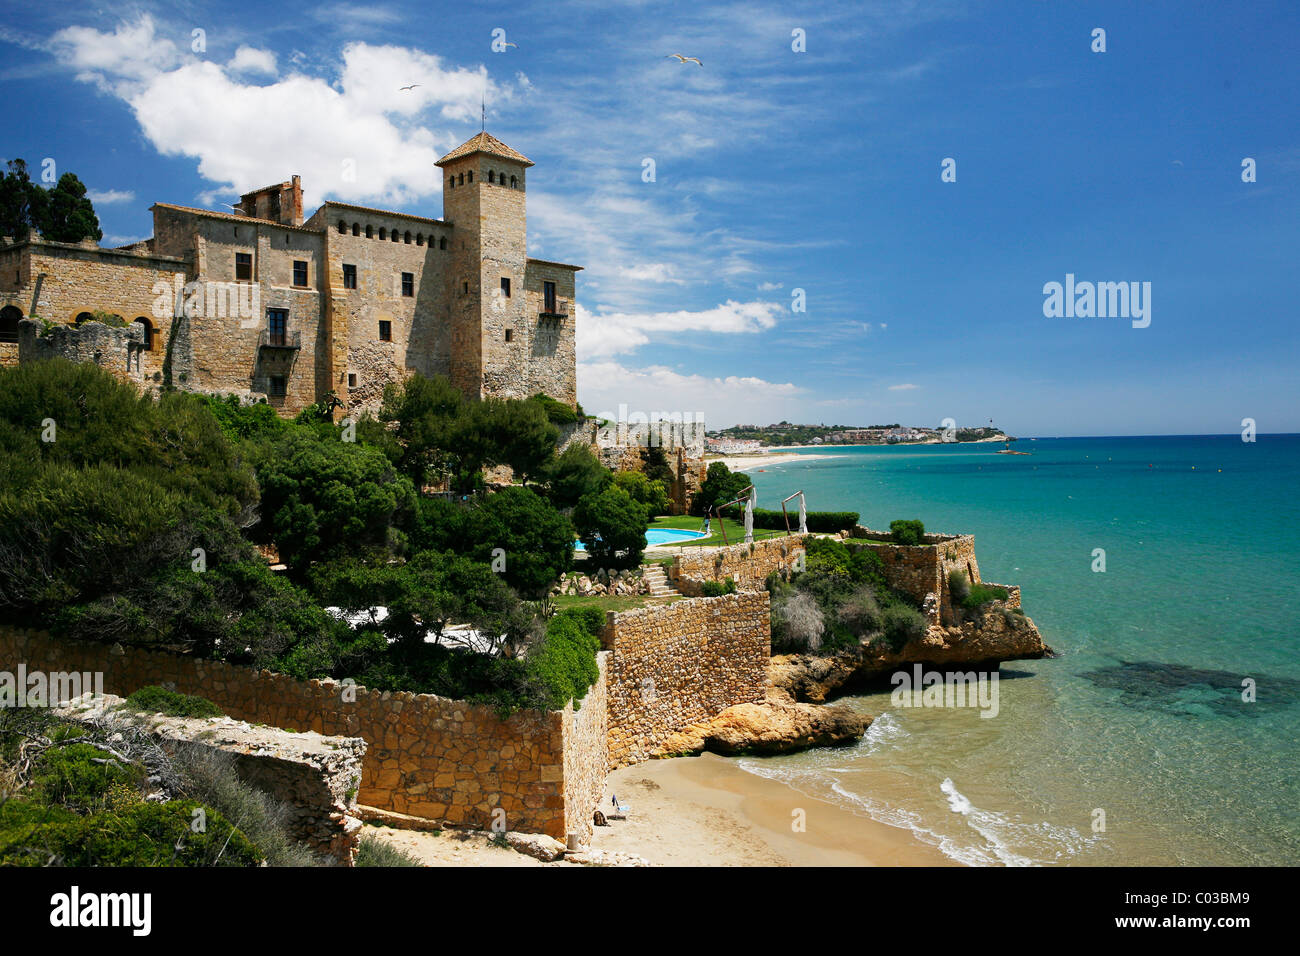 Mediterranean coast in Tarragona, Tamarit, Catalonia, Spain, Europe Stock Photo